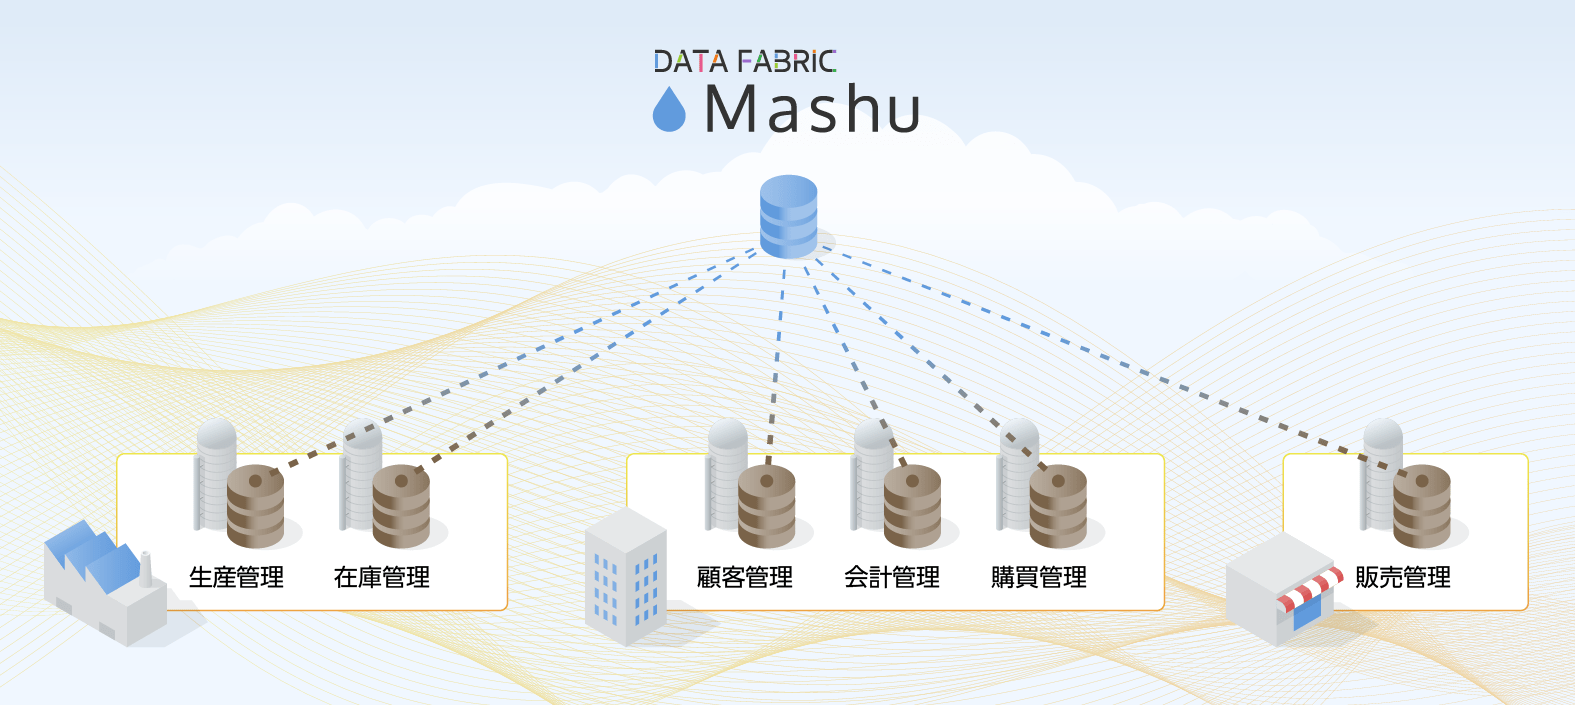 メタデータを管理する 「Mashu」